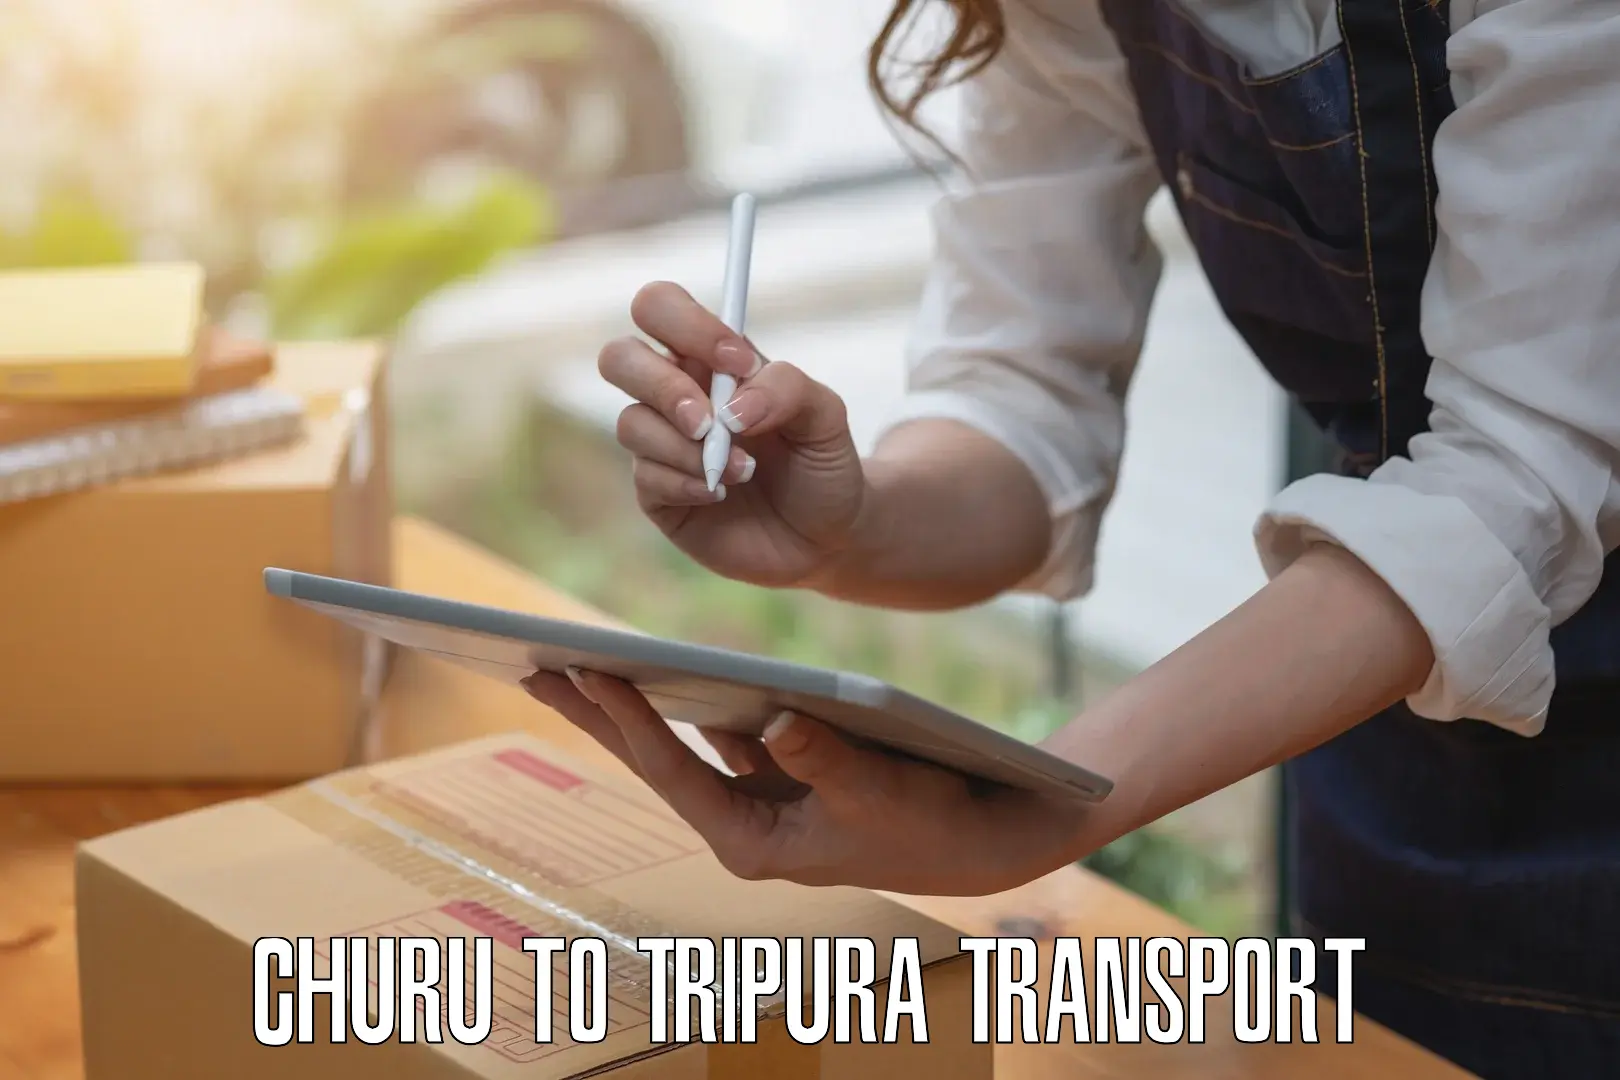 Delivery service Churu to Teliamura